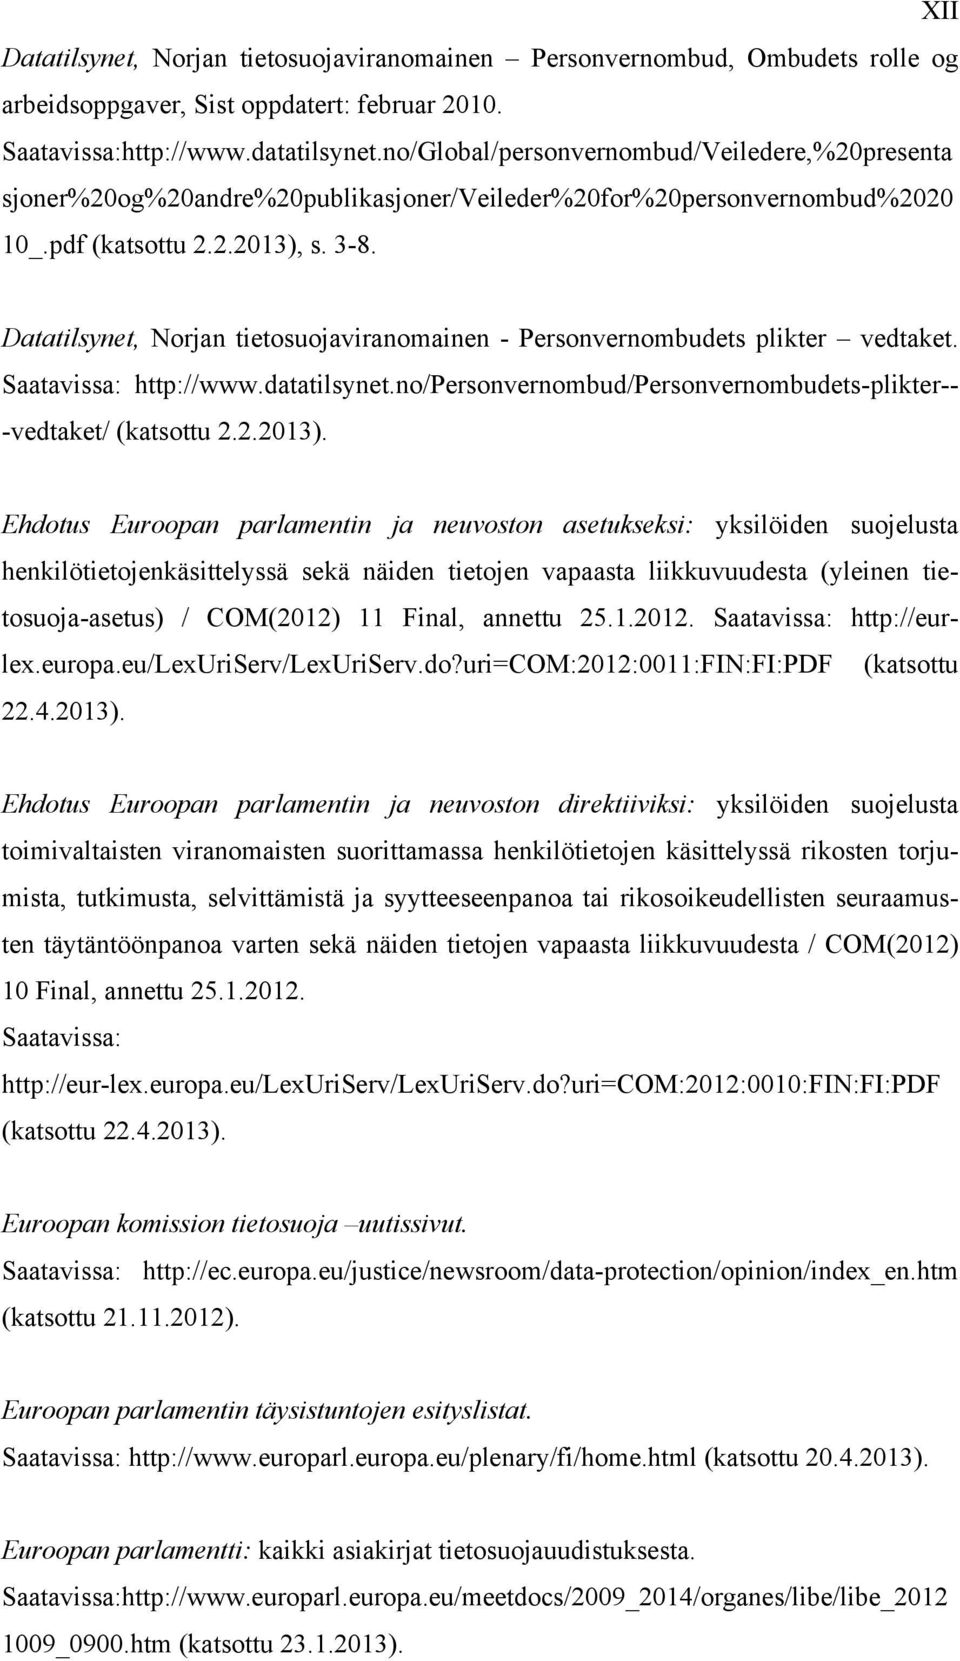 Datatilsynet, Norjan tietosuojaviranomainen - Personvernombudets plikter vedtaket. Saatavissa: http://www.datatilsynet.no/personvernombud/personvernombudets-plikter-- -vedtaket/ (katsottu 2.2.2013).